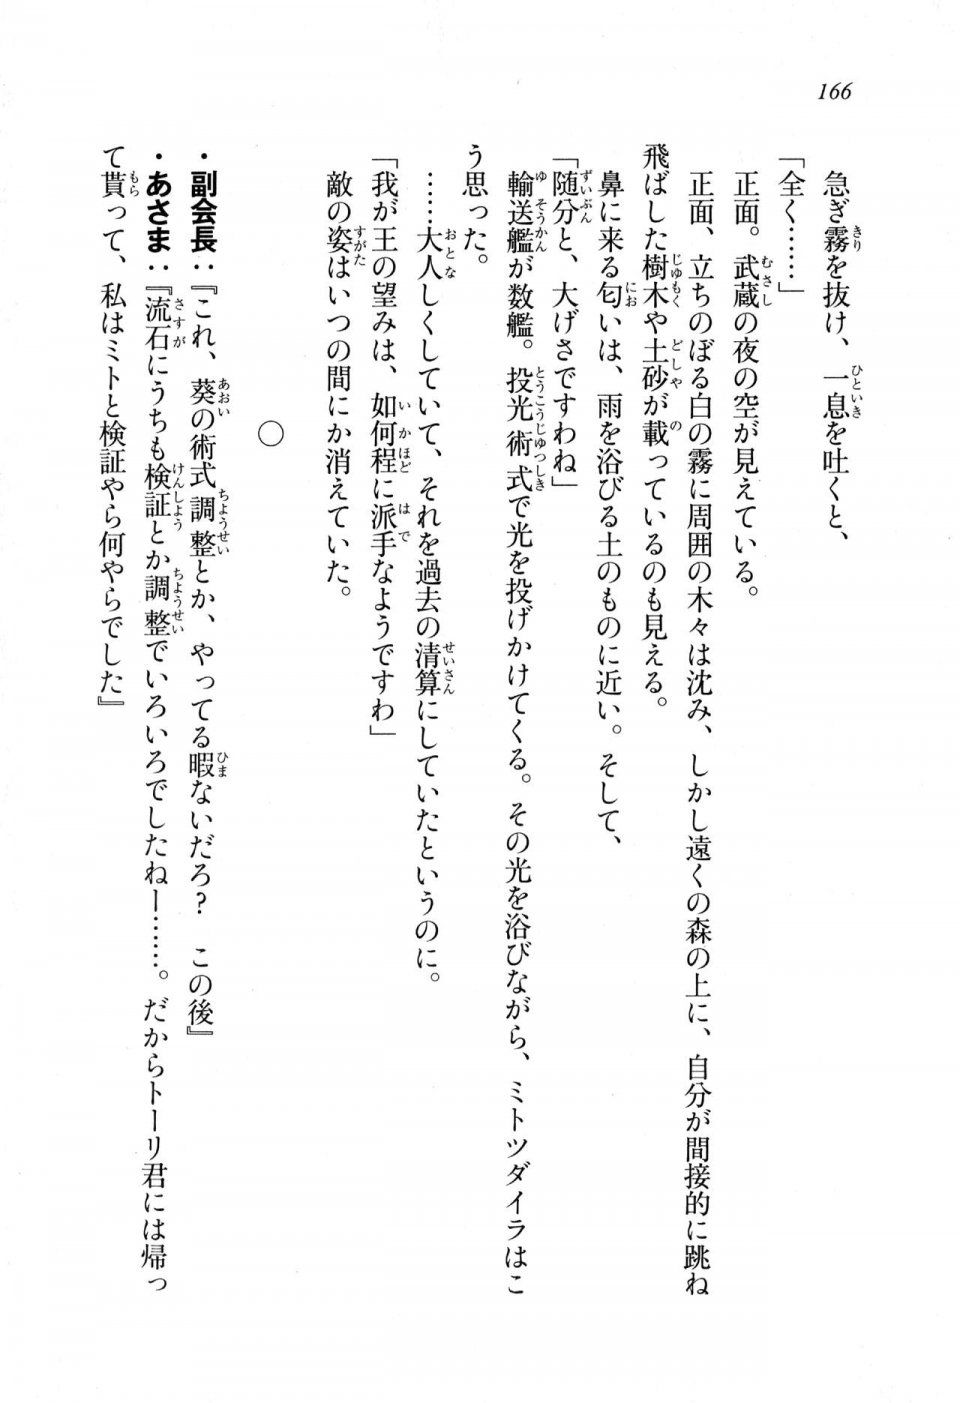 Kyoukai Senjou no Horizon LN Sidestory Vol 1 - Photo #164